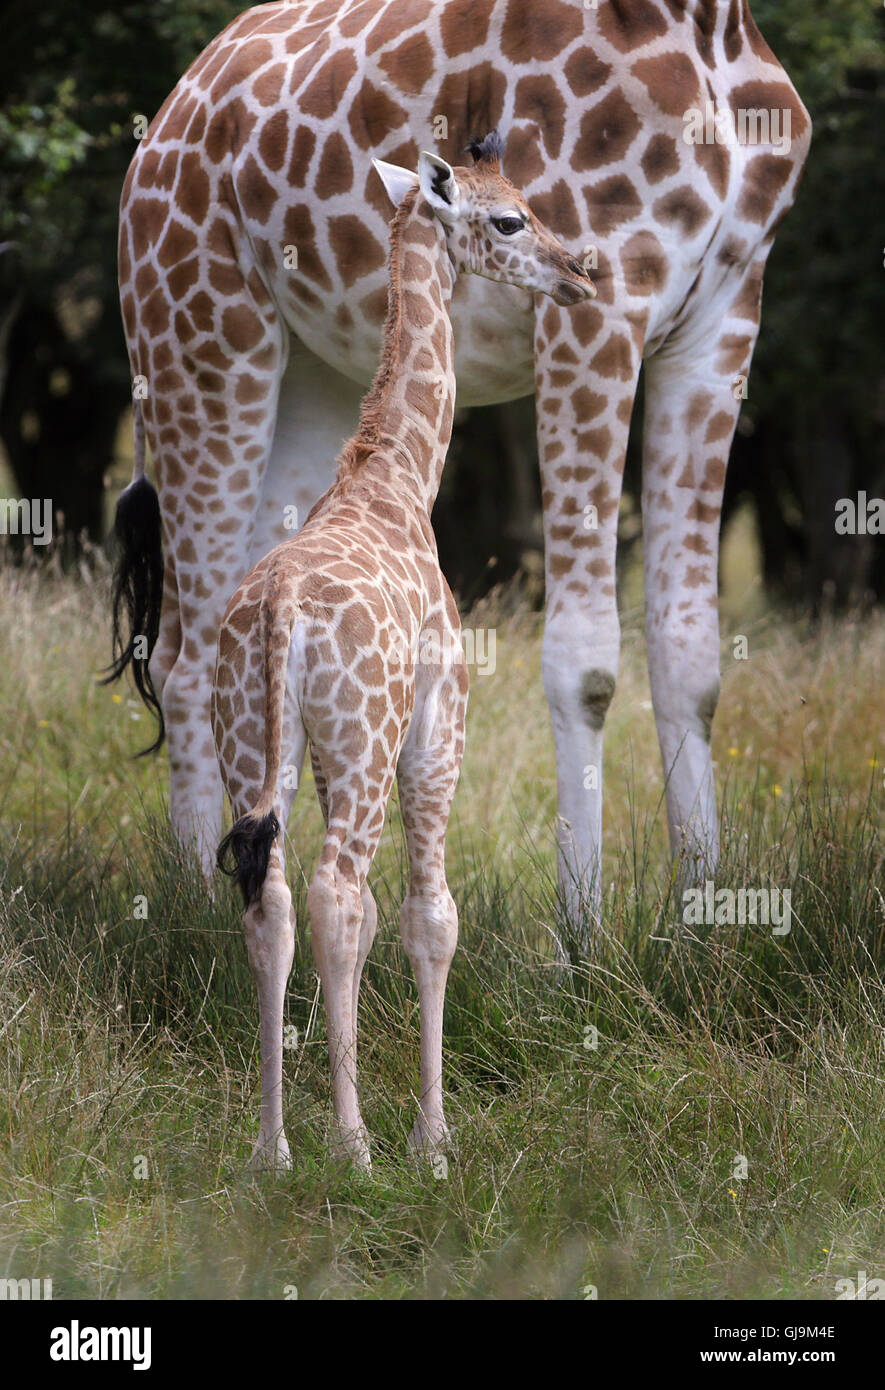 È sotto embargo per 0001 Lunedì 15 Agosto Un come ancora senza nome donna giraffa Rothschild vitello con sua madre lunare, esplorare il suo nuovo ambiente di oltre 600 ettari di riserva animale al Port Lympne riserva vicino Ashford nel Kent. Foto Stock